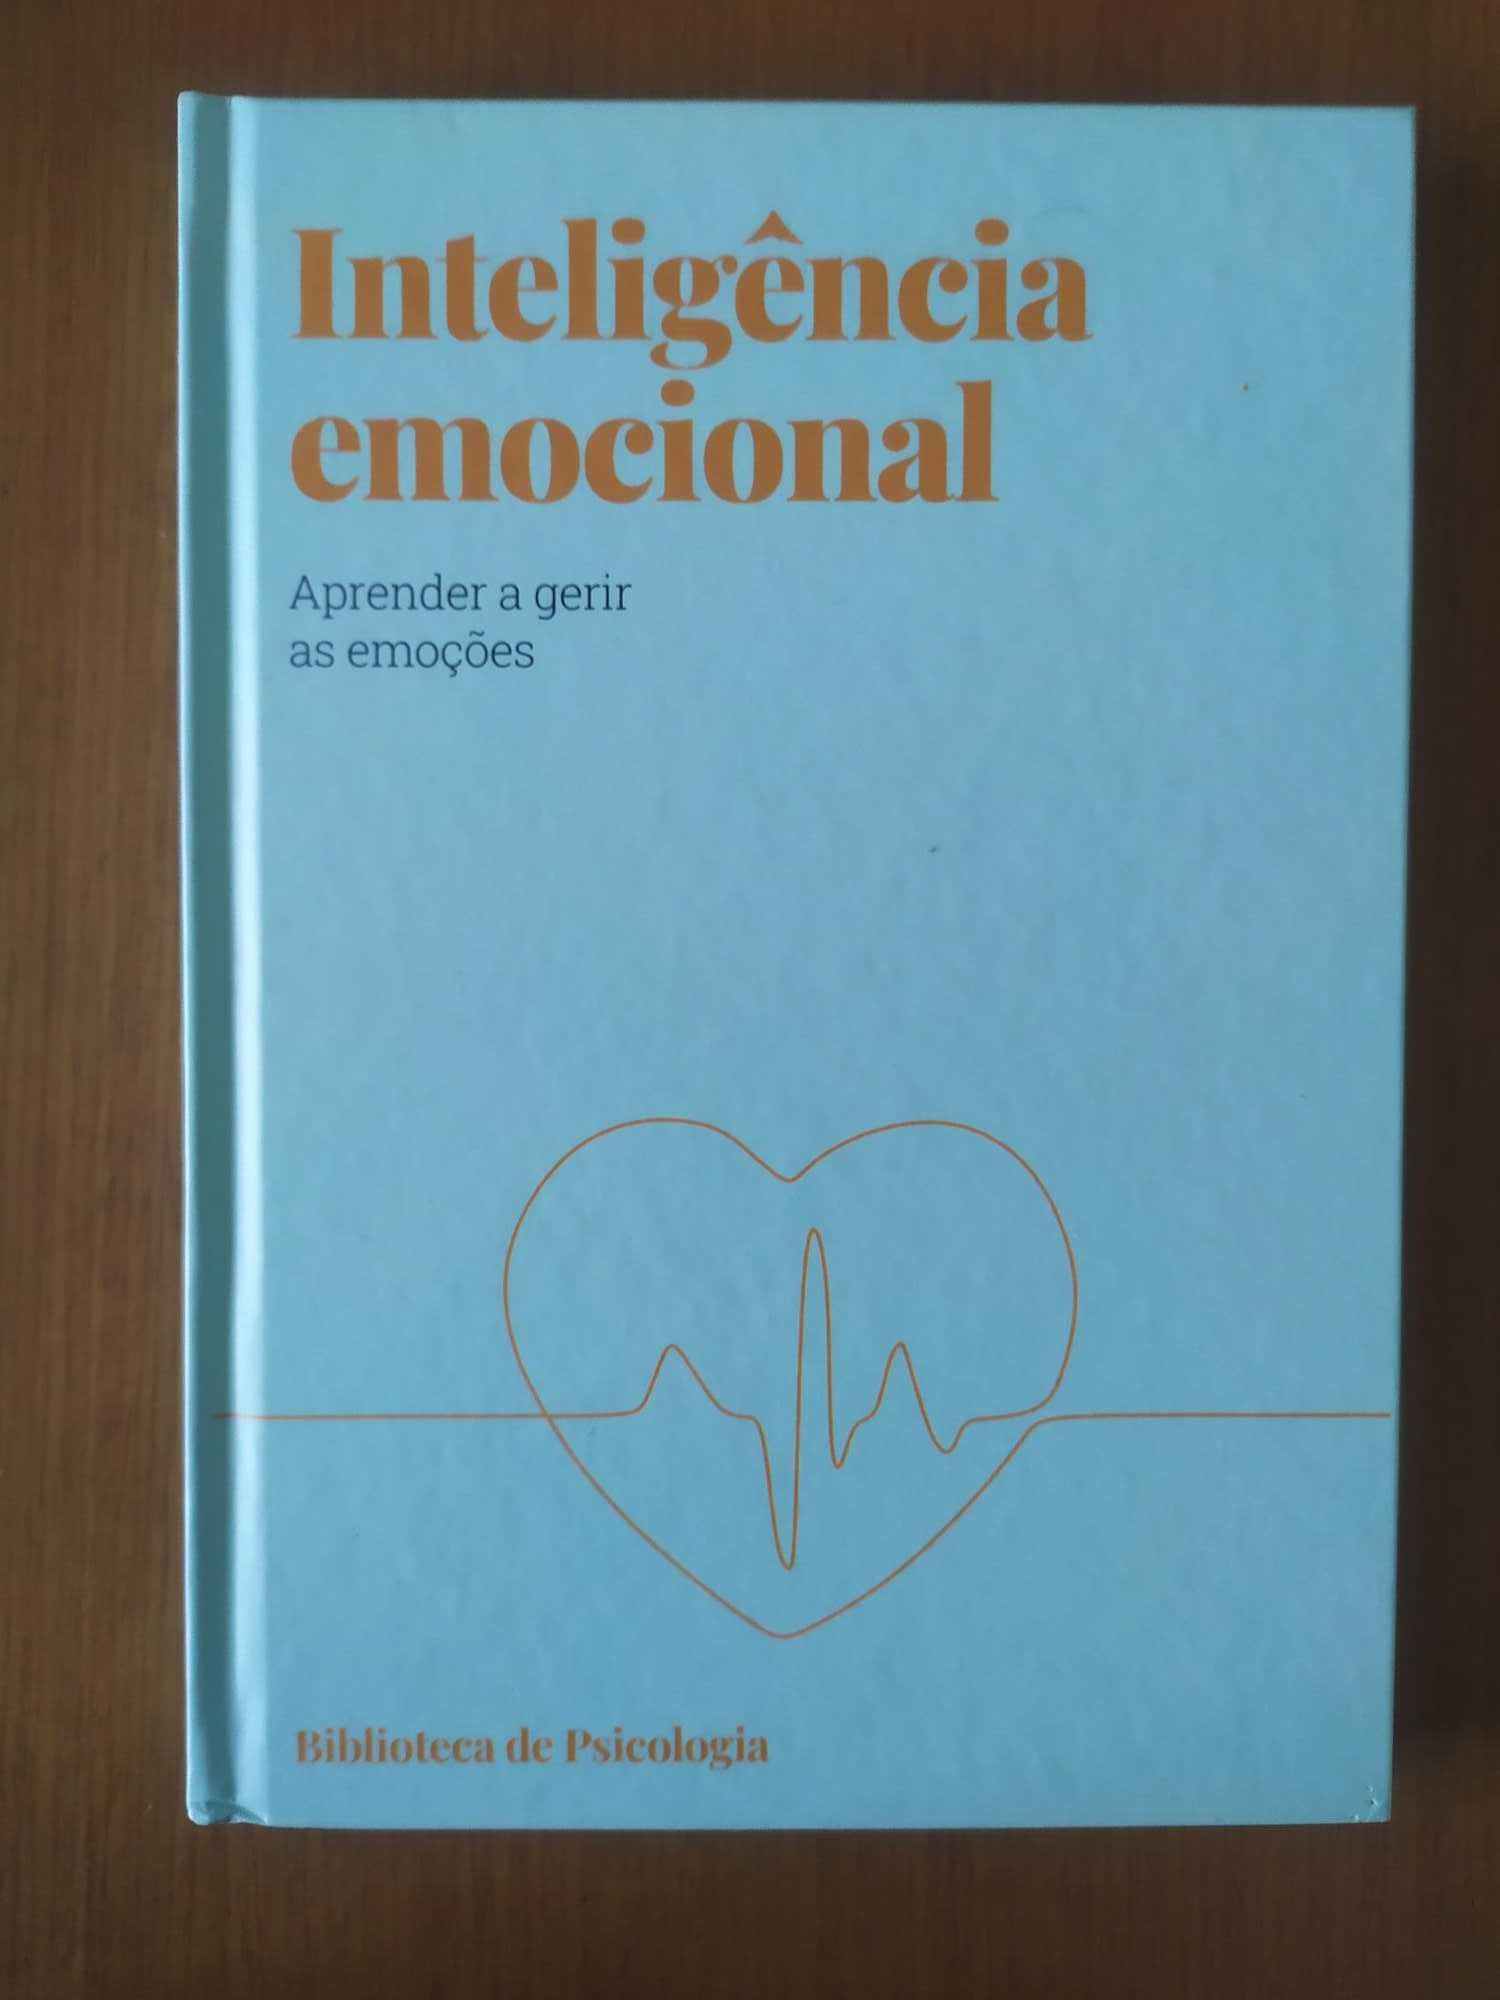 Coleção biblioteca de psicologia - inteligência emocional